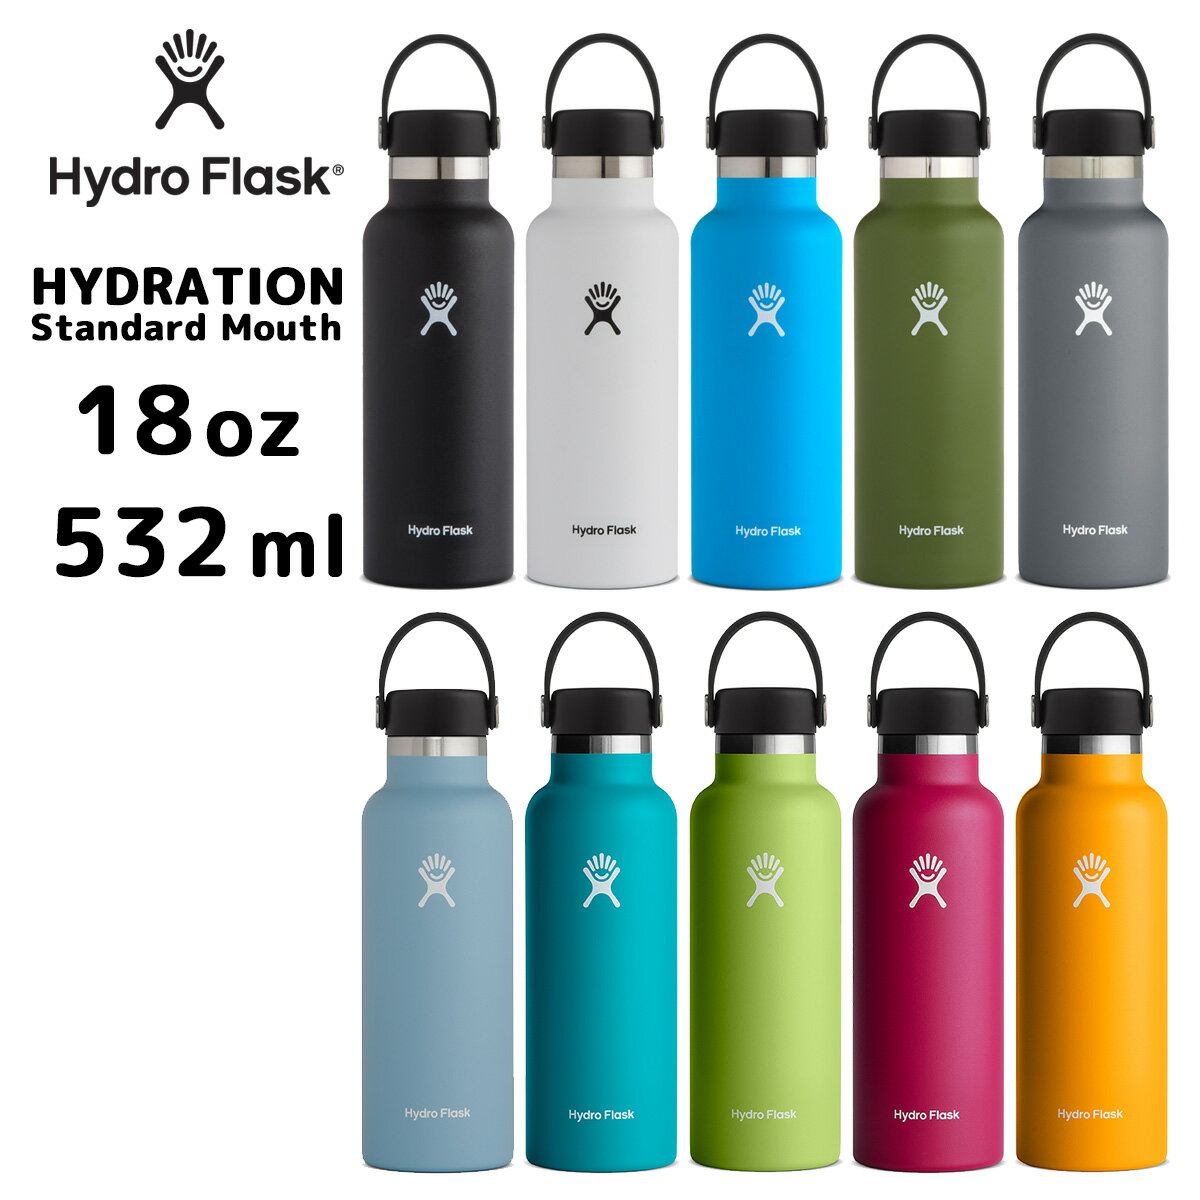 安いHydro Flaskの通販商品を比較 | ショッピング情報のオークファン